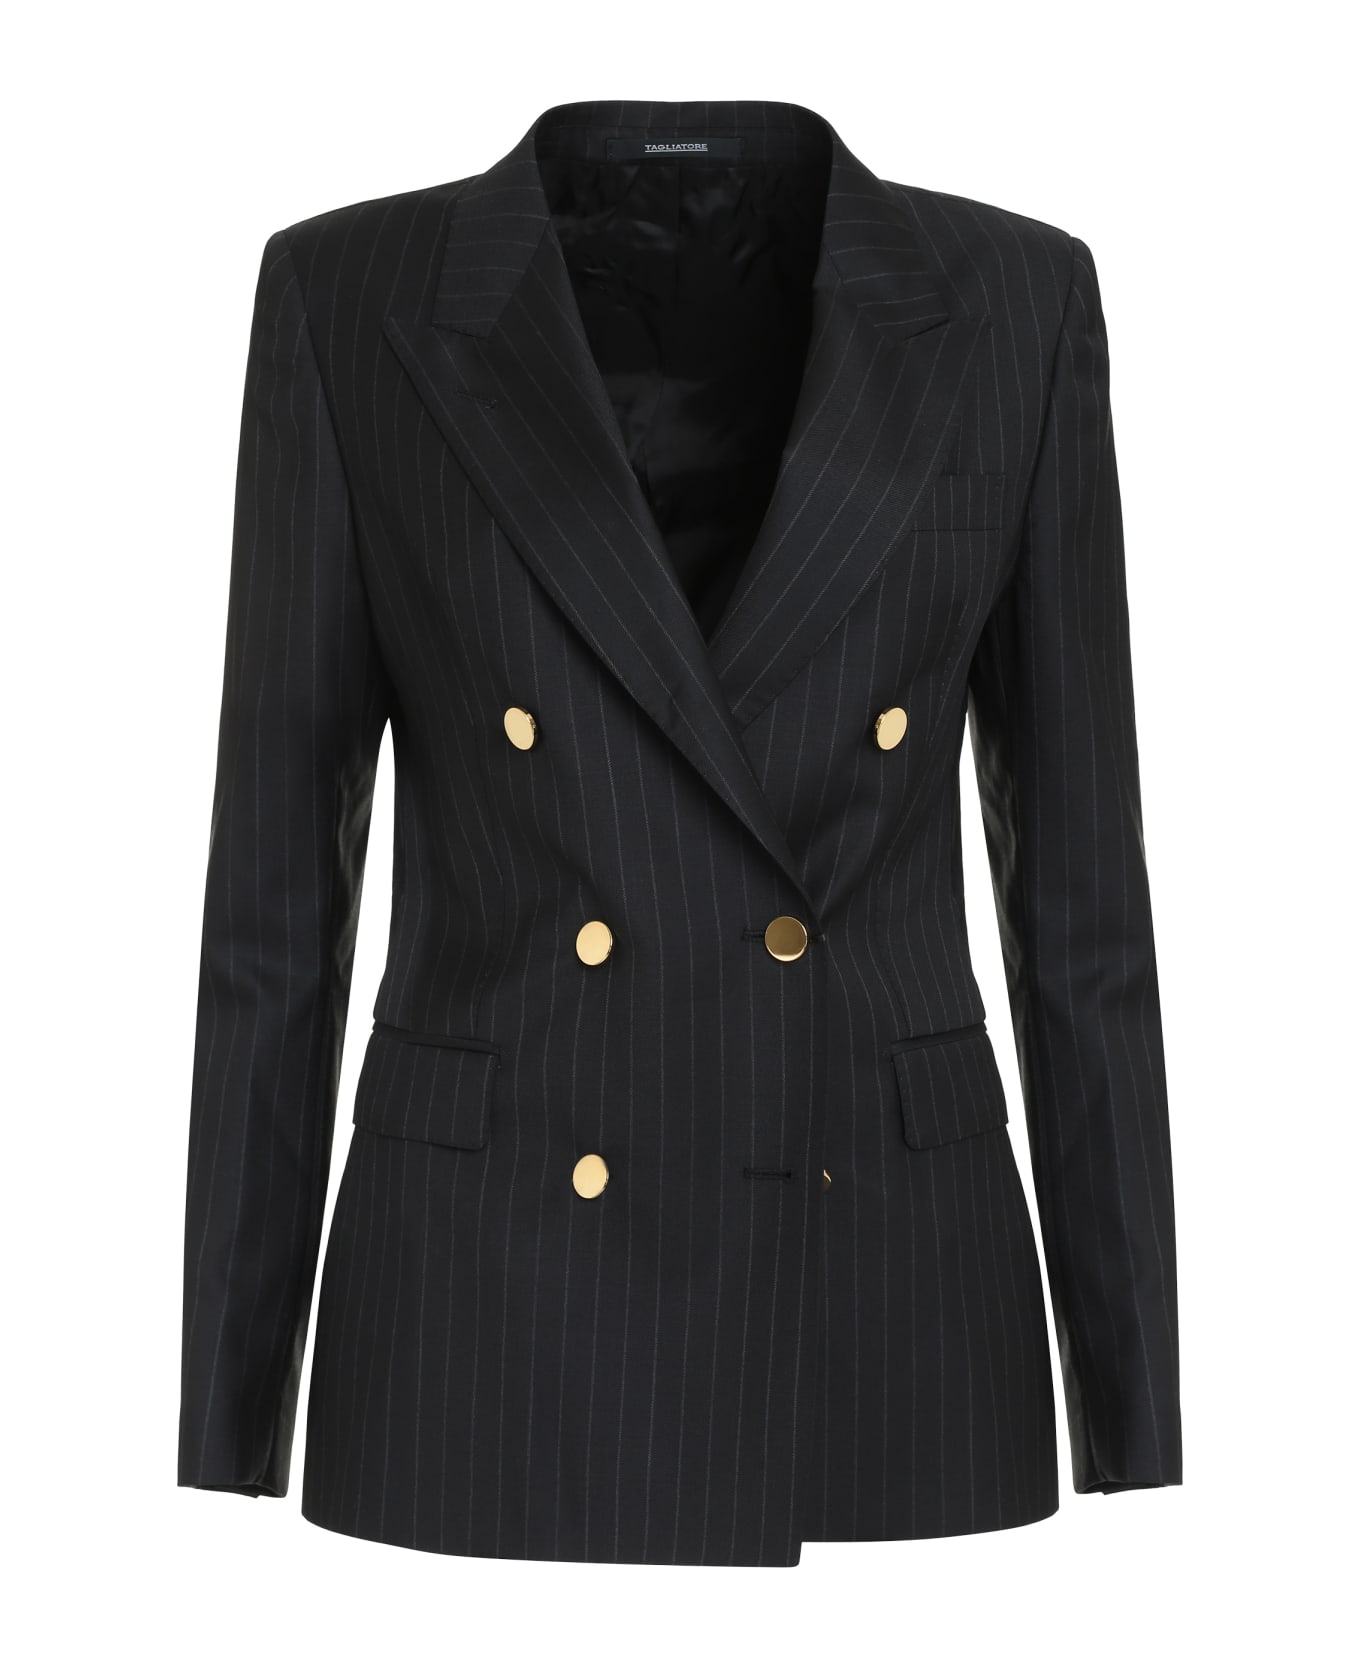 Tagliatore 0205 T-parigi Two-piece Suit - black ブレザー